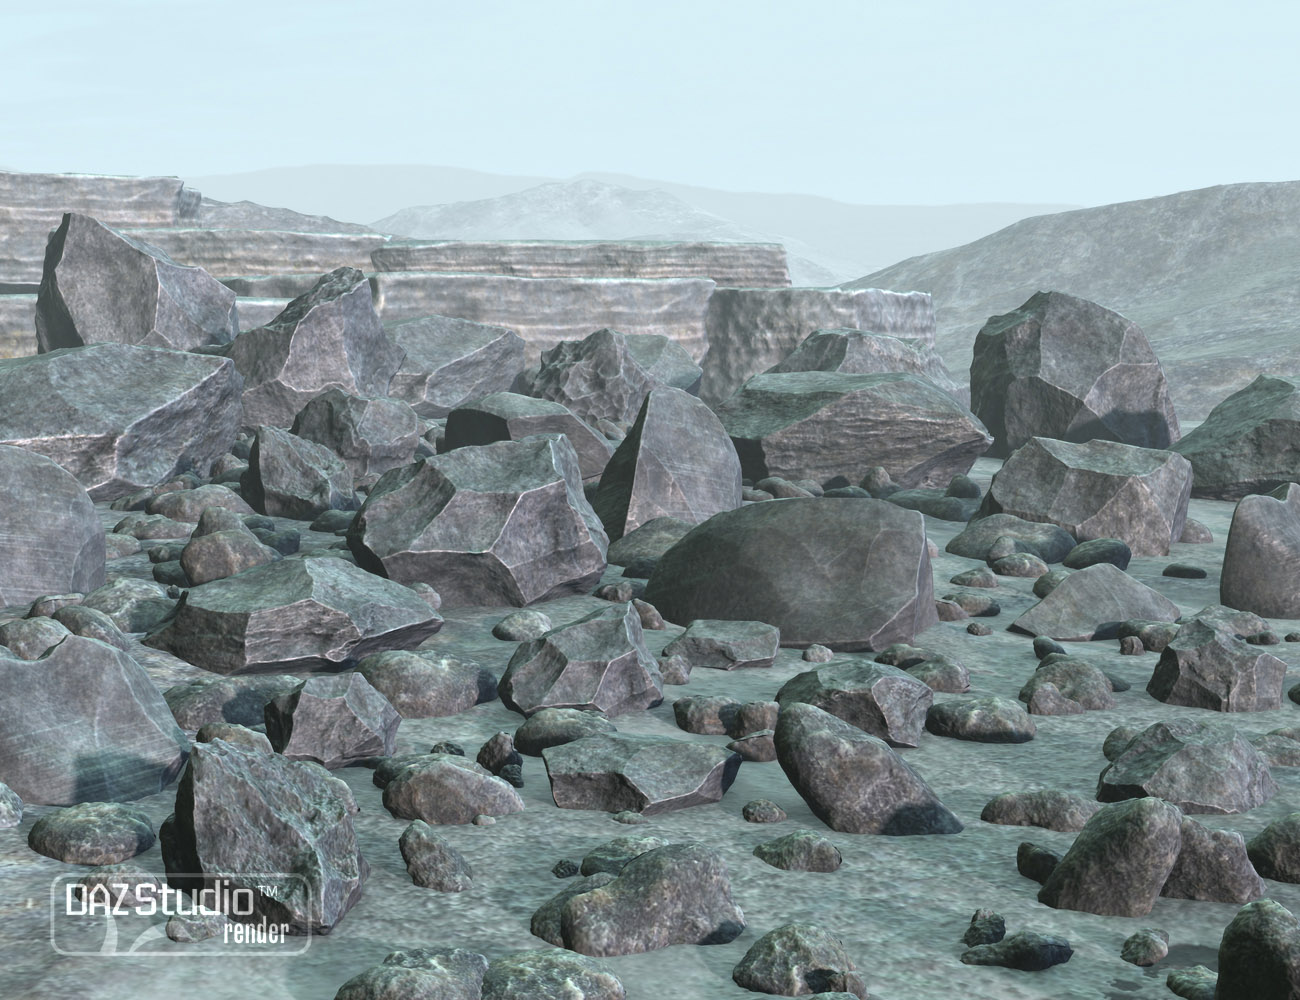 Space Stones by: petipet, 3D Models by Daz 3D